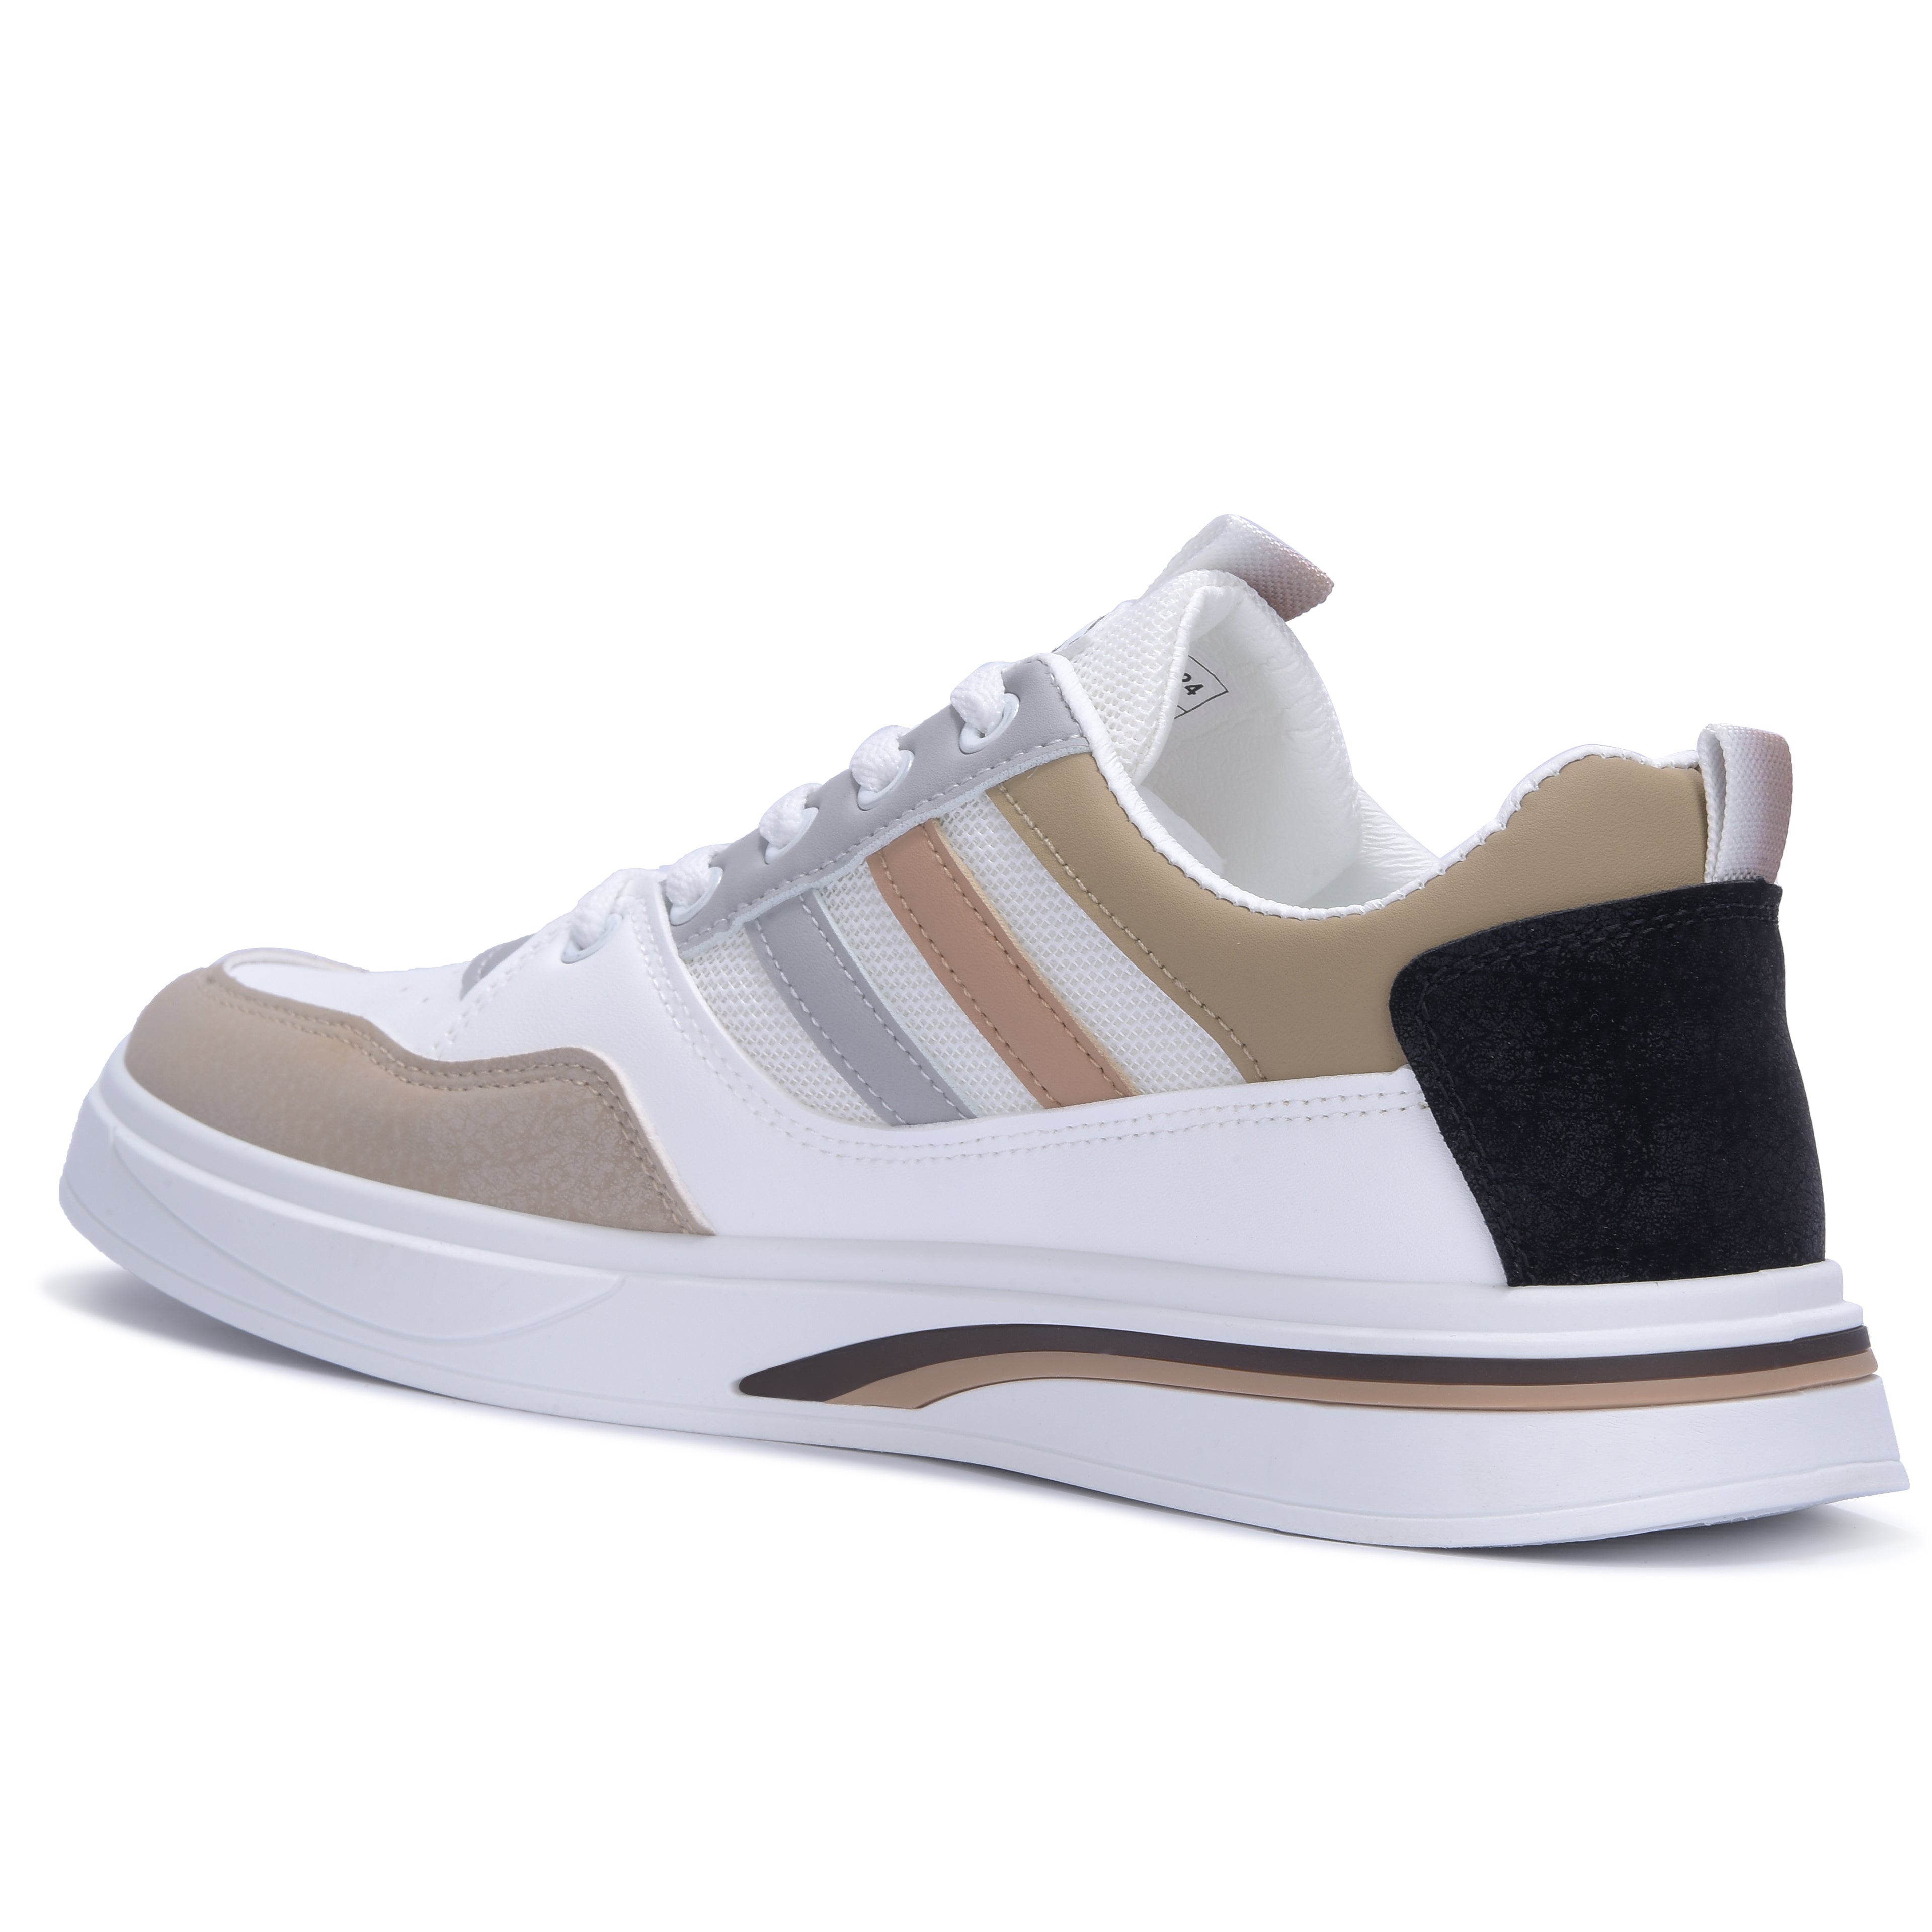 Calcetto CLT-2024 White Khaki Sneaker For Men